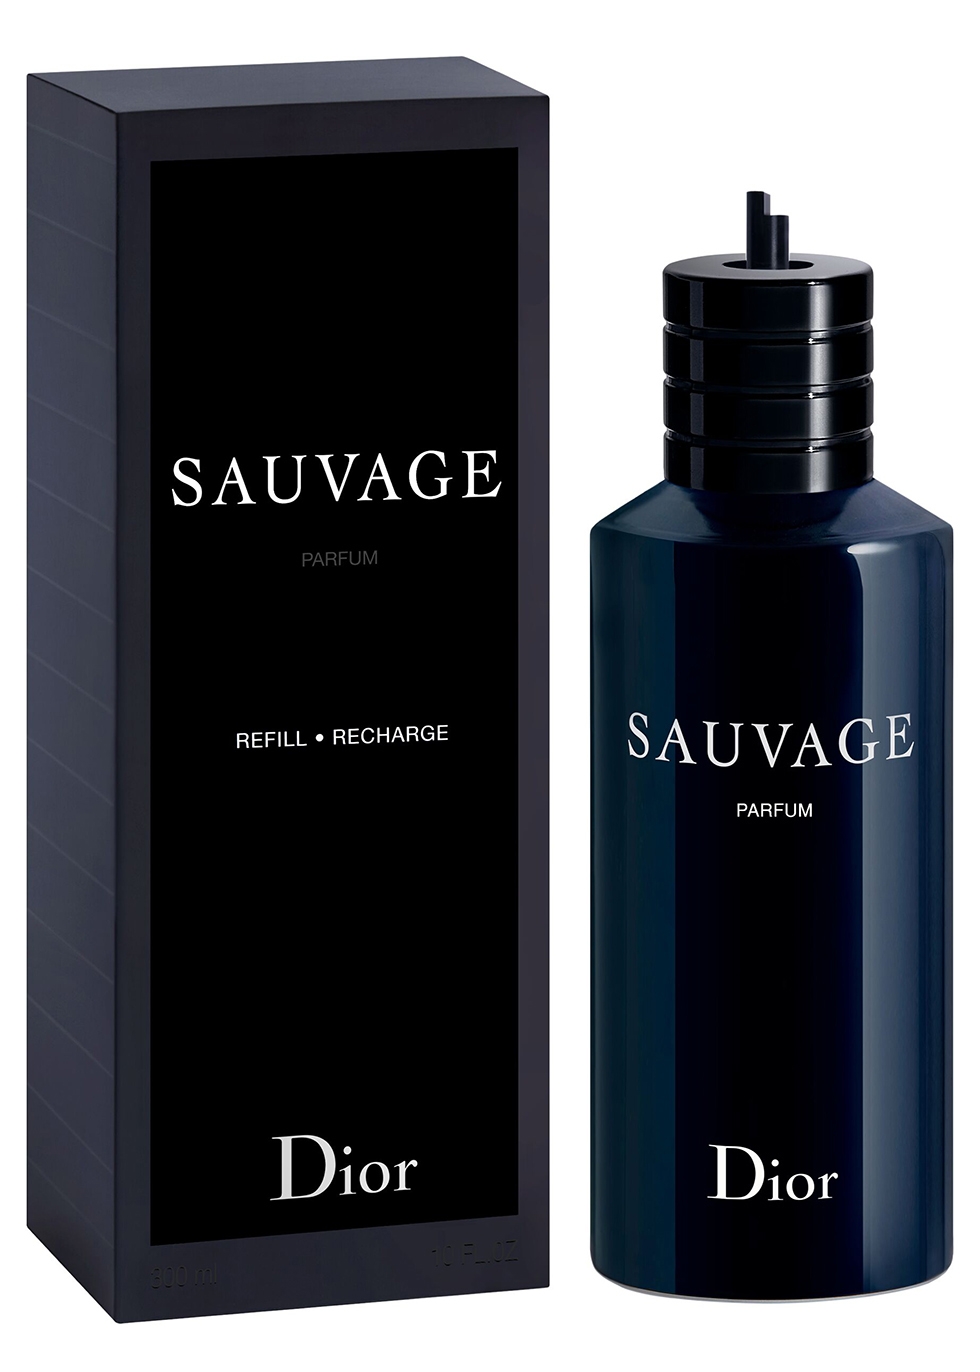 Nước Hoa Dior Sauvage EDT Refill  Chuẩn Perfume